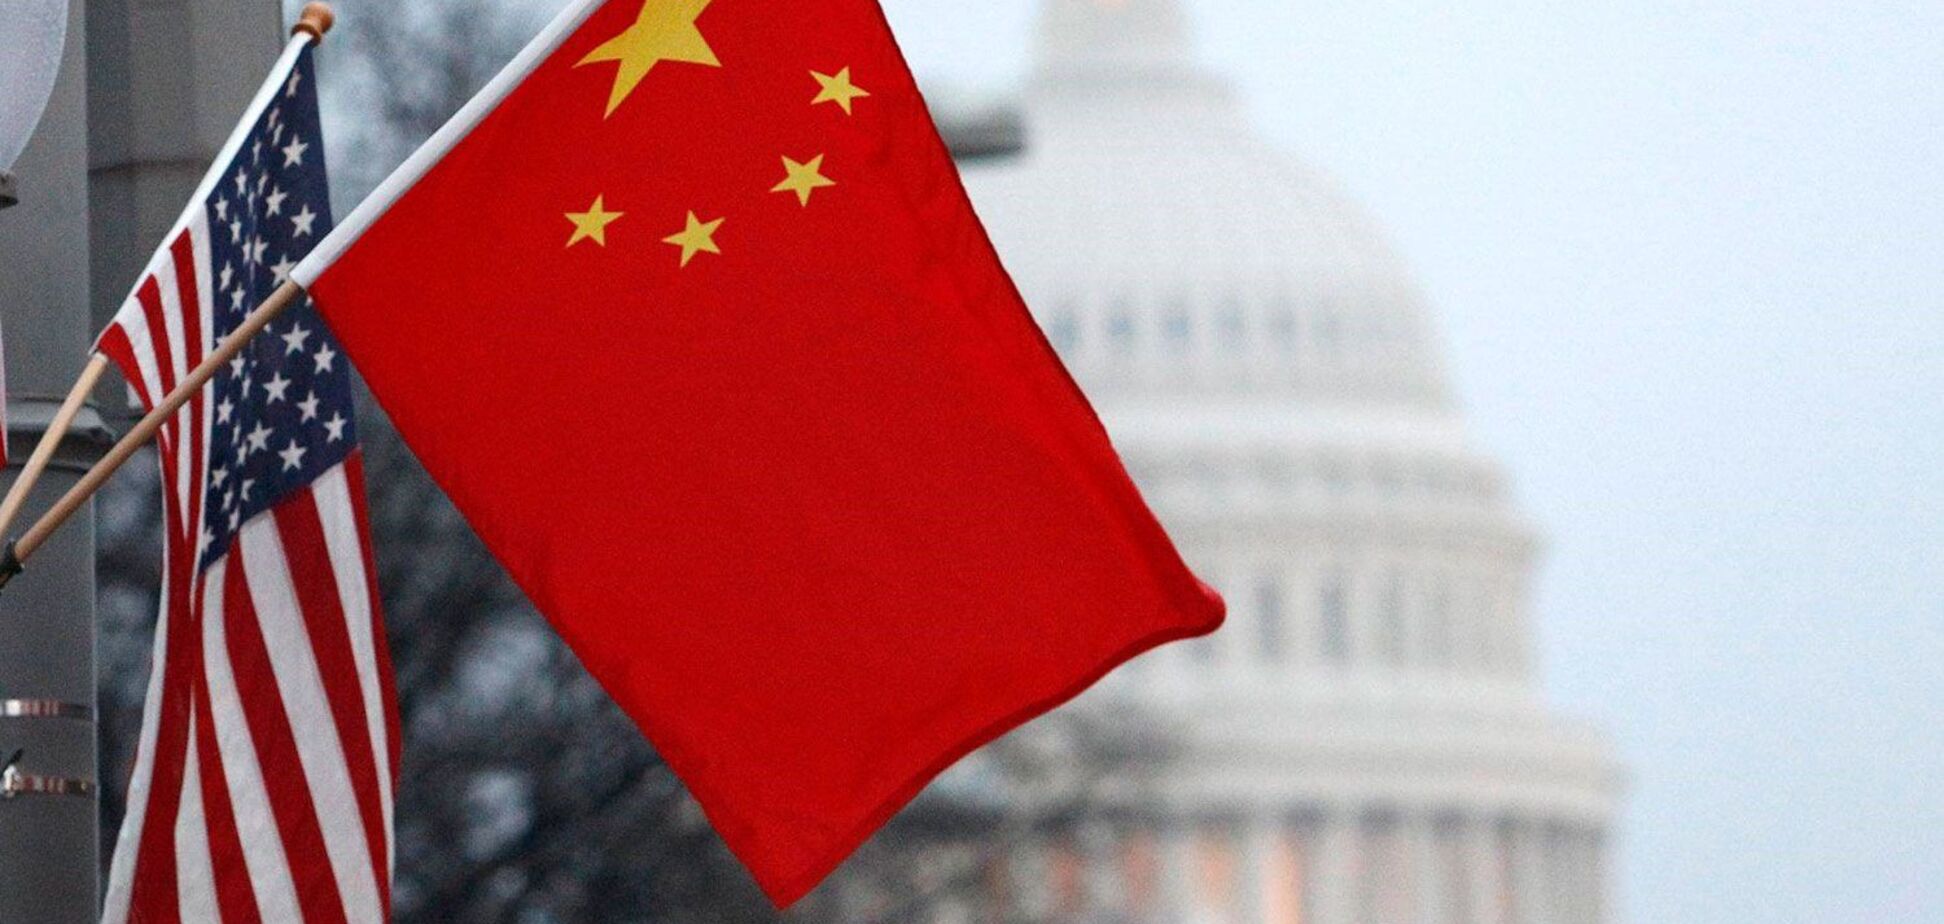 Противостояние США и Китая определит будущее мира